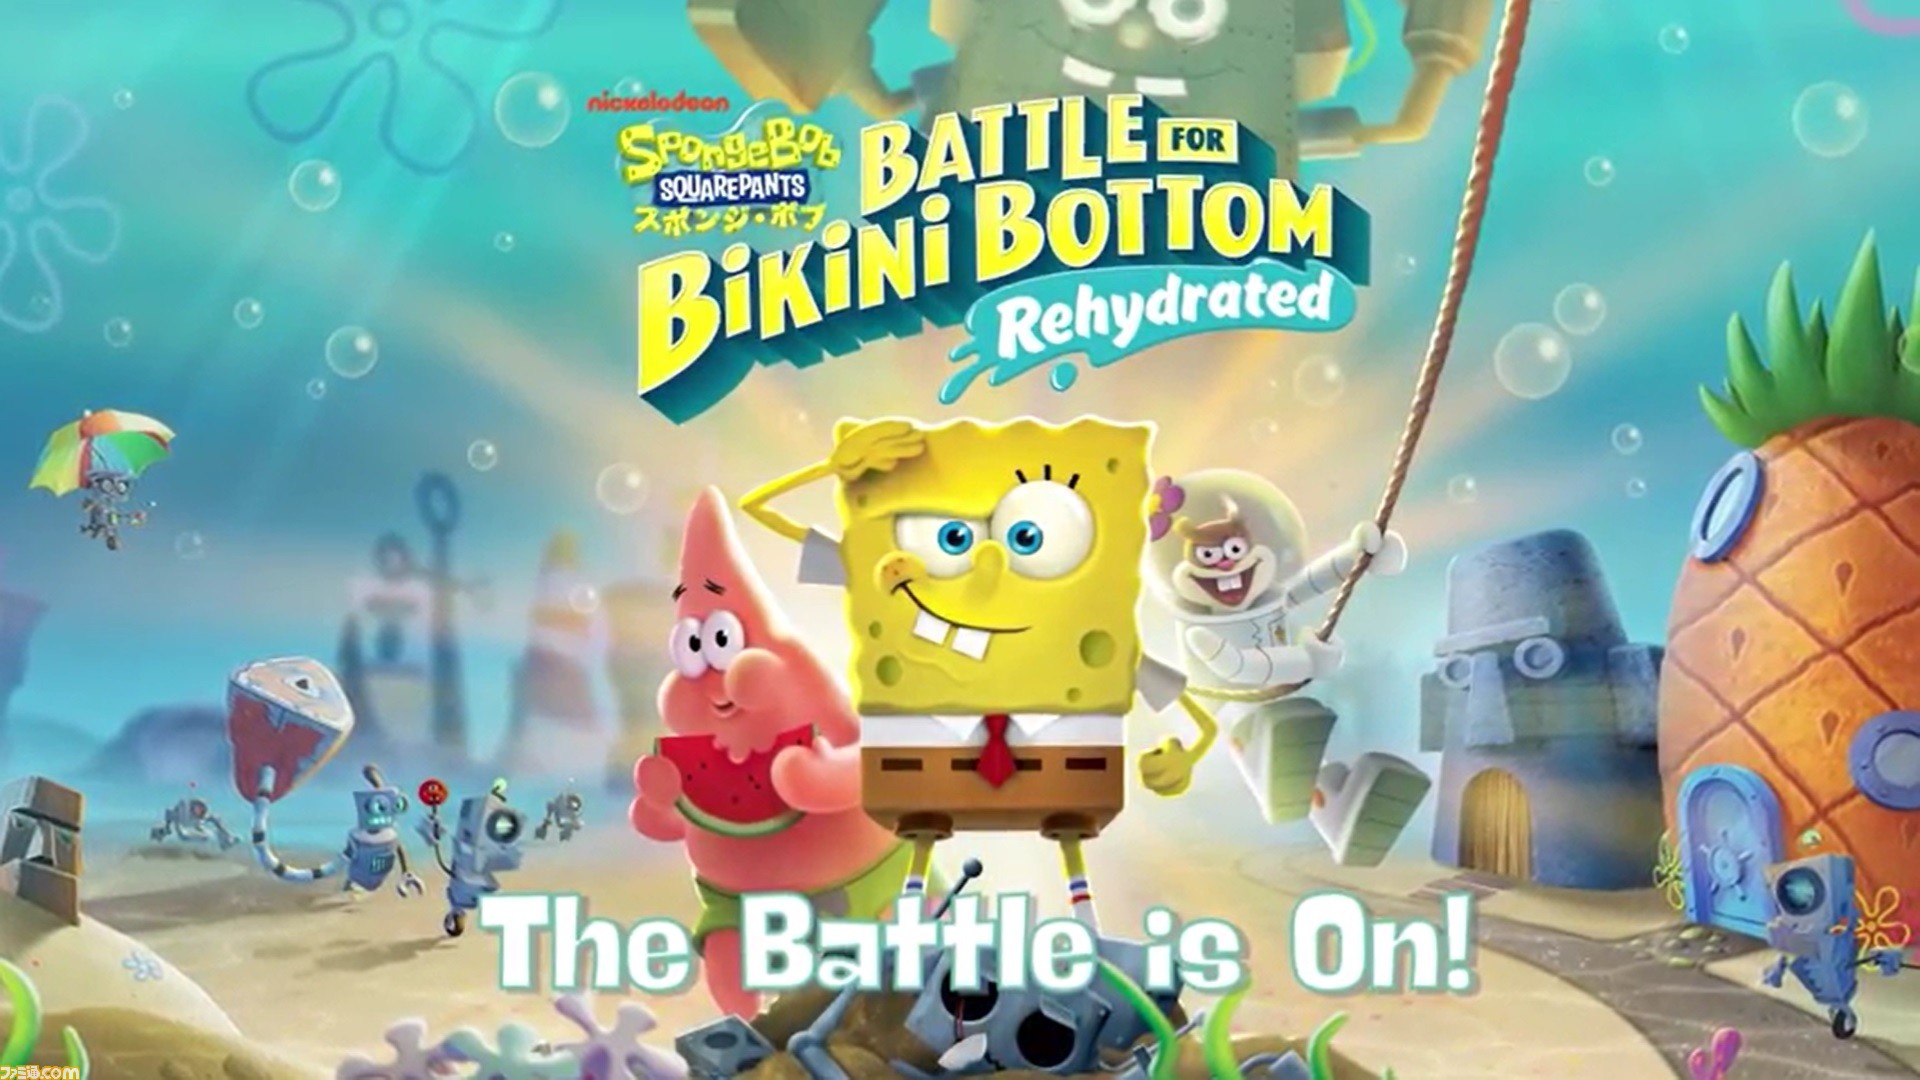 スポンジ ボブ Battle For Bikini Bottom Rehydrated 本日発売 アニメと同じ声優による日本語吹き替えで楽しめる ファミ通 Com